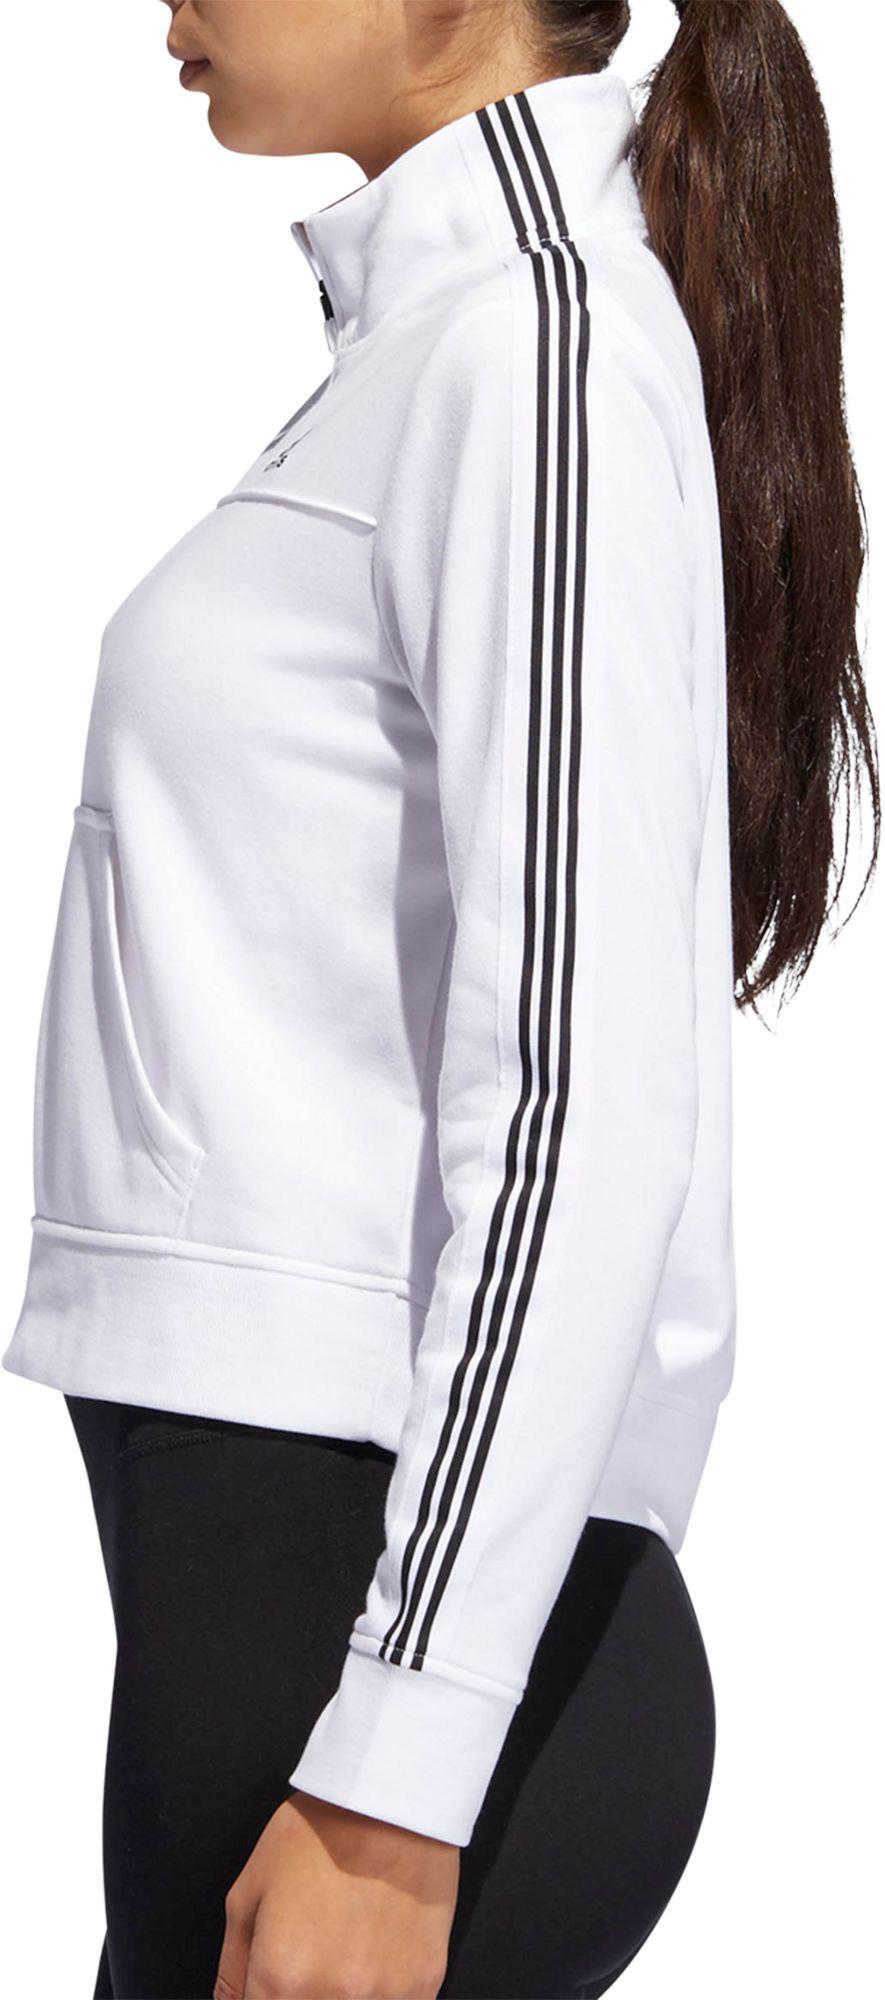 adidas women's changeover half zip sweatshirt